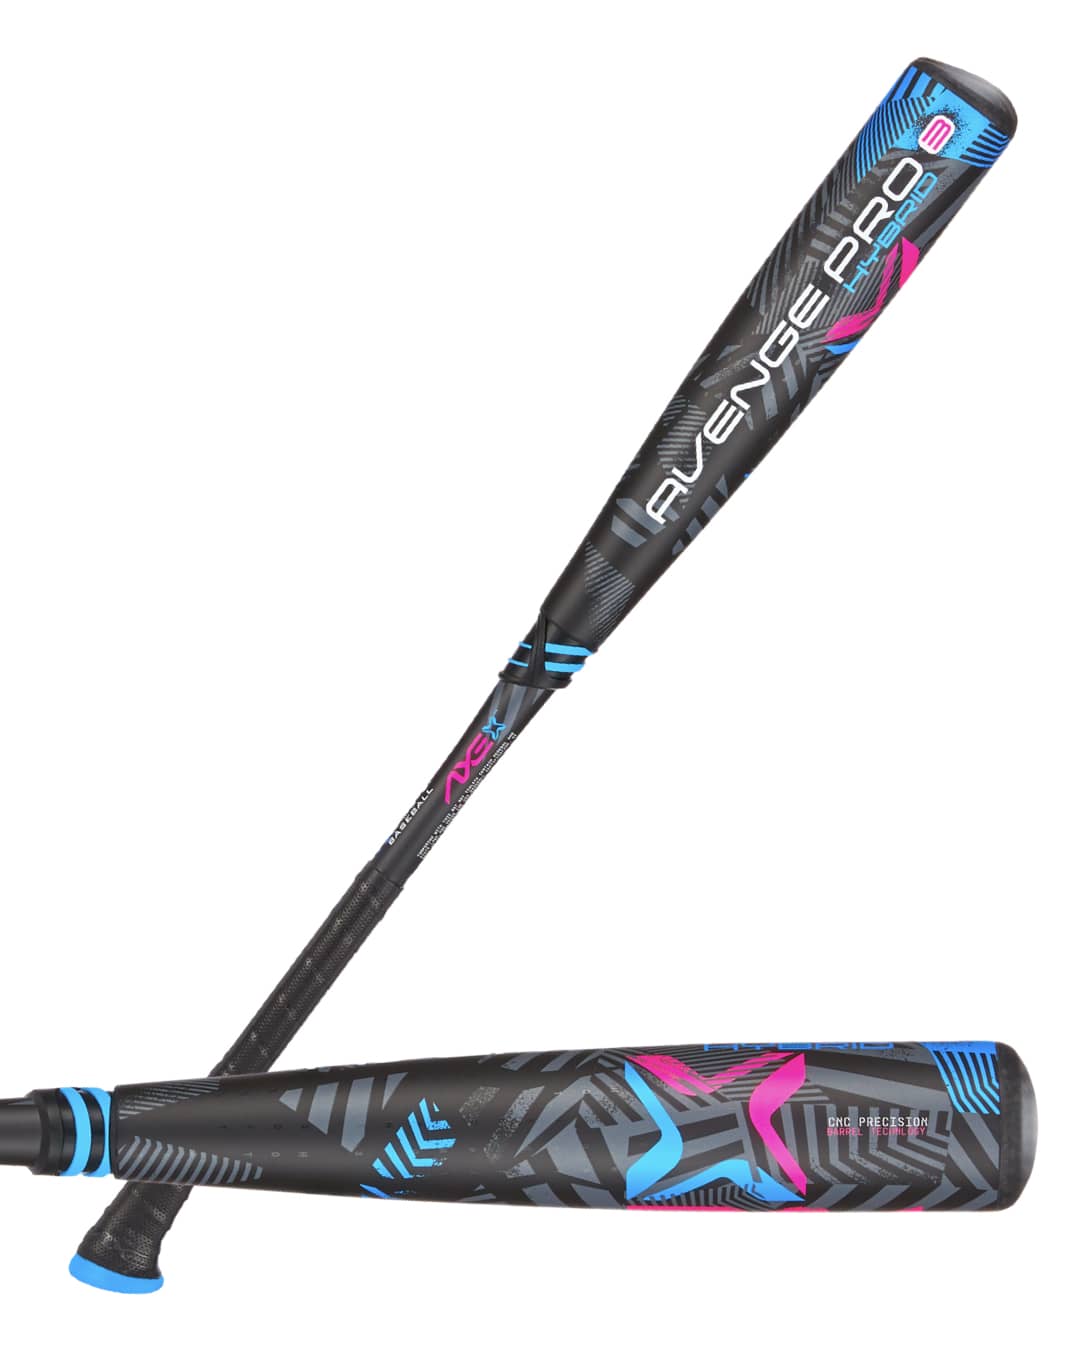 Axe Avenge Pro 3 Hybrid USA Baseball Bat , -8